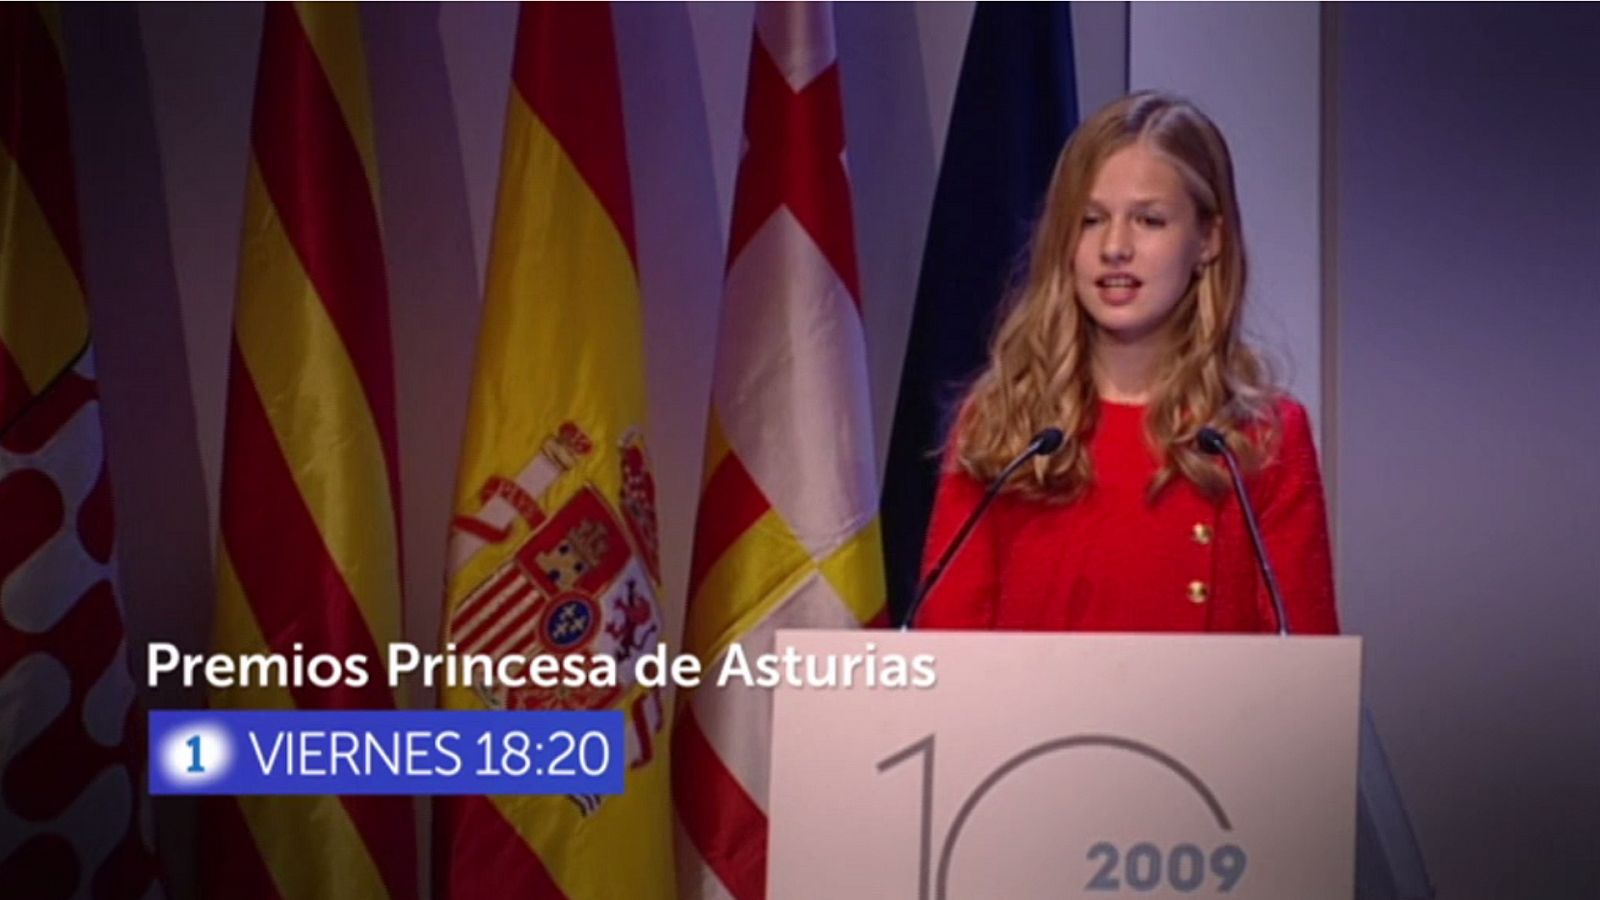 Promo de La 1 sobre los Premios Princesa de Asturias